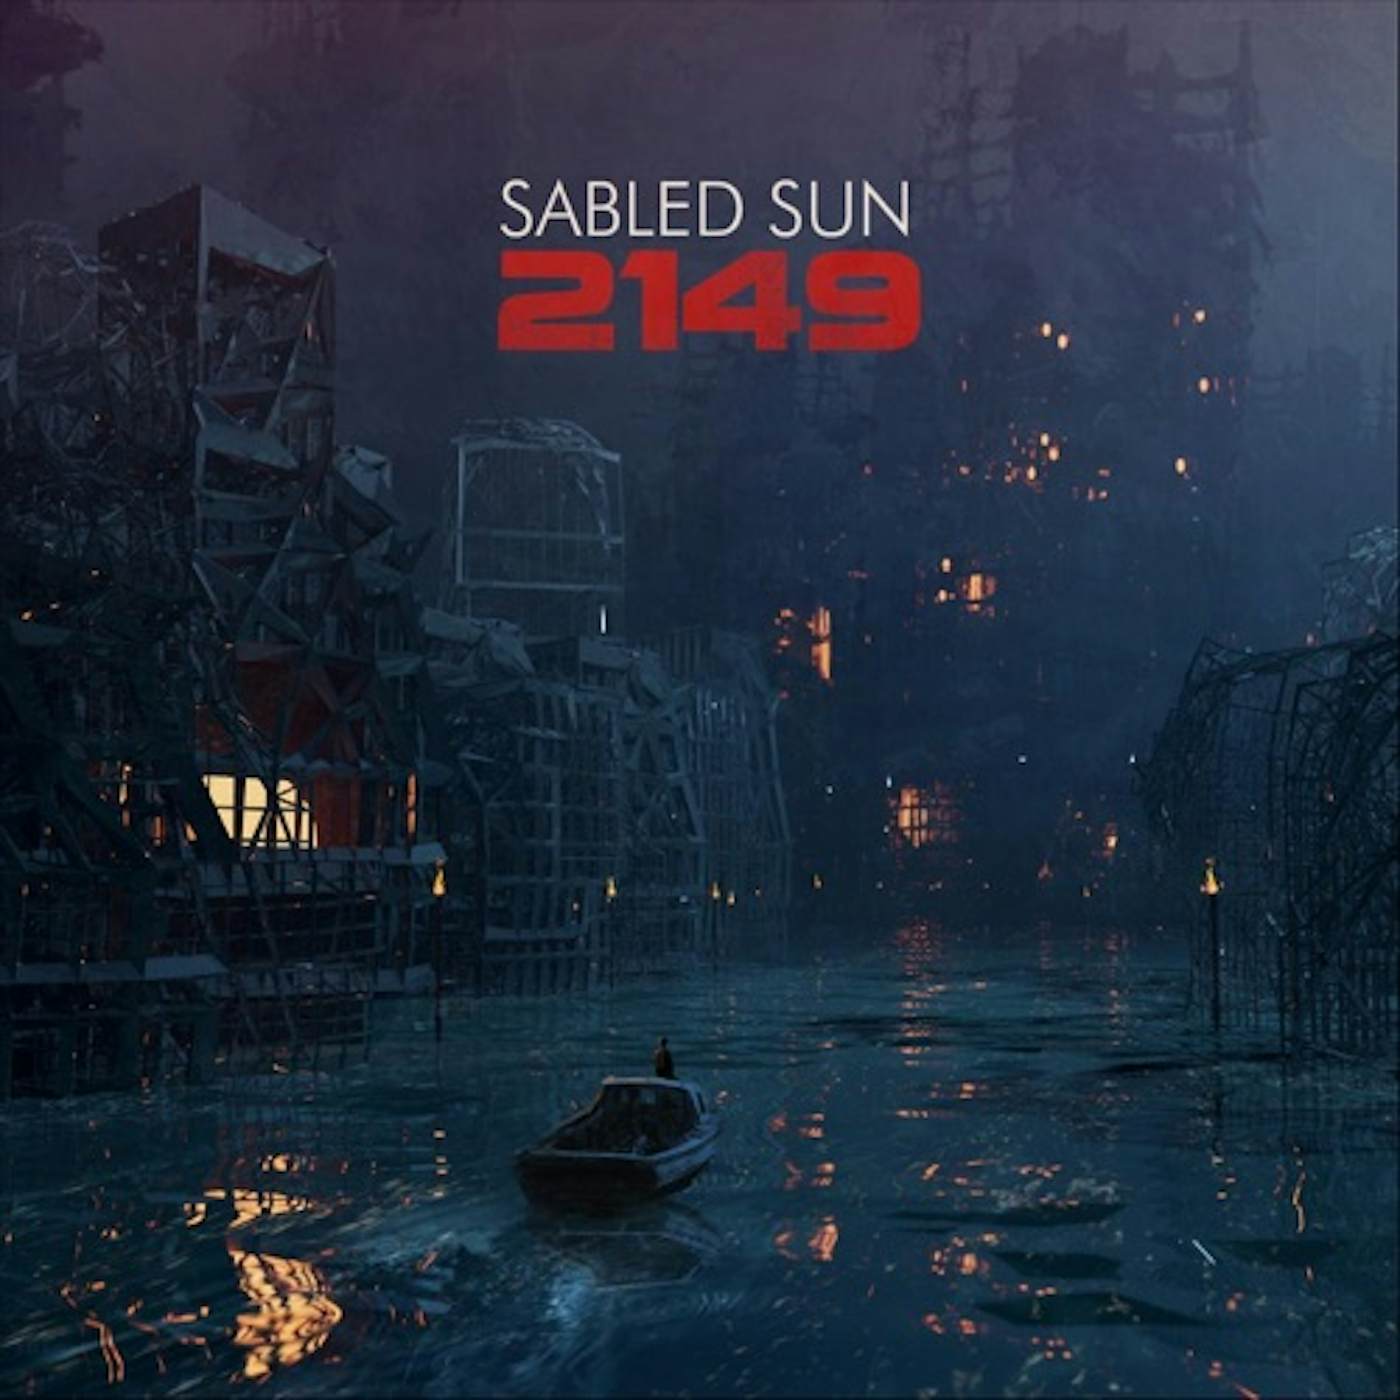 Sabled Sun 2149 CD